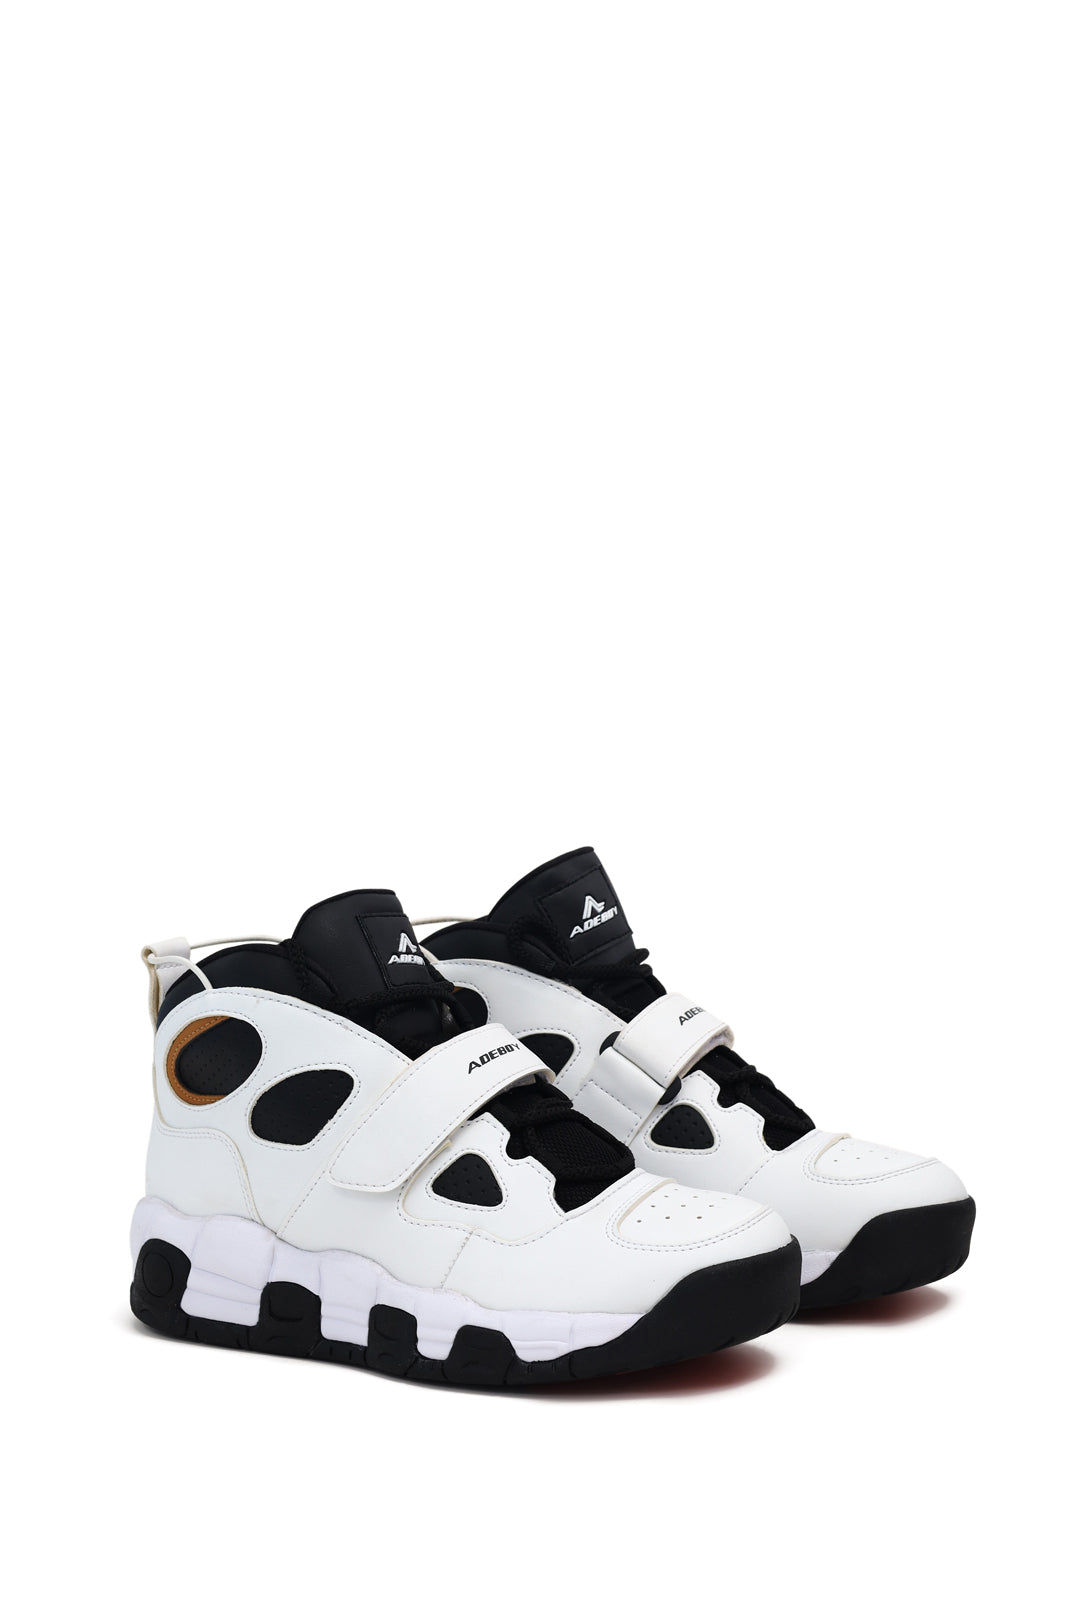 Strap White & Black High Top Sneaker